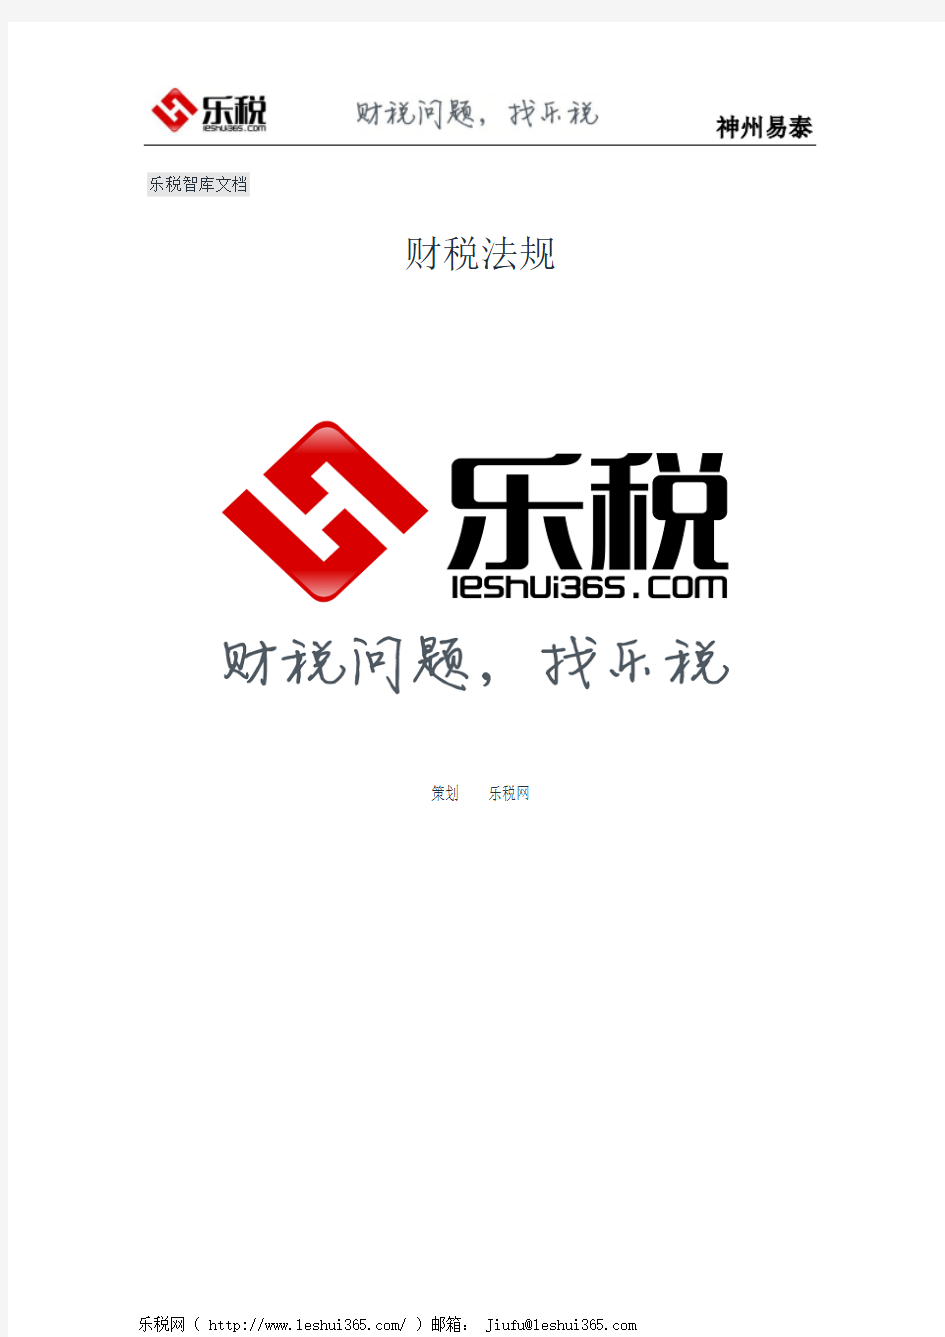 北京市地方税务局关于调整直属稽查机构设置的公告